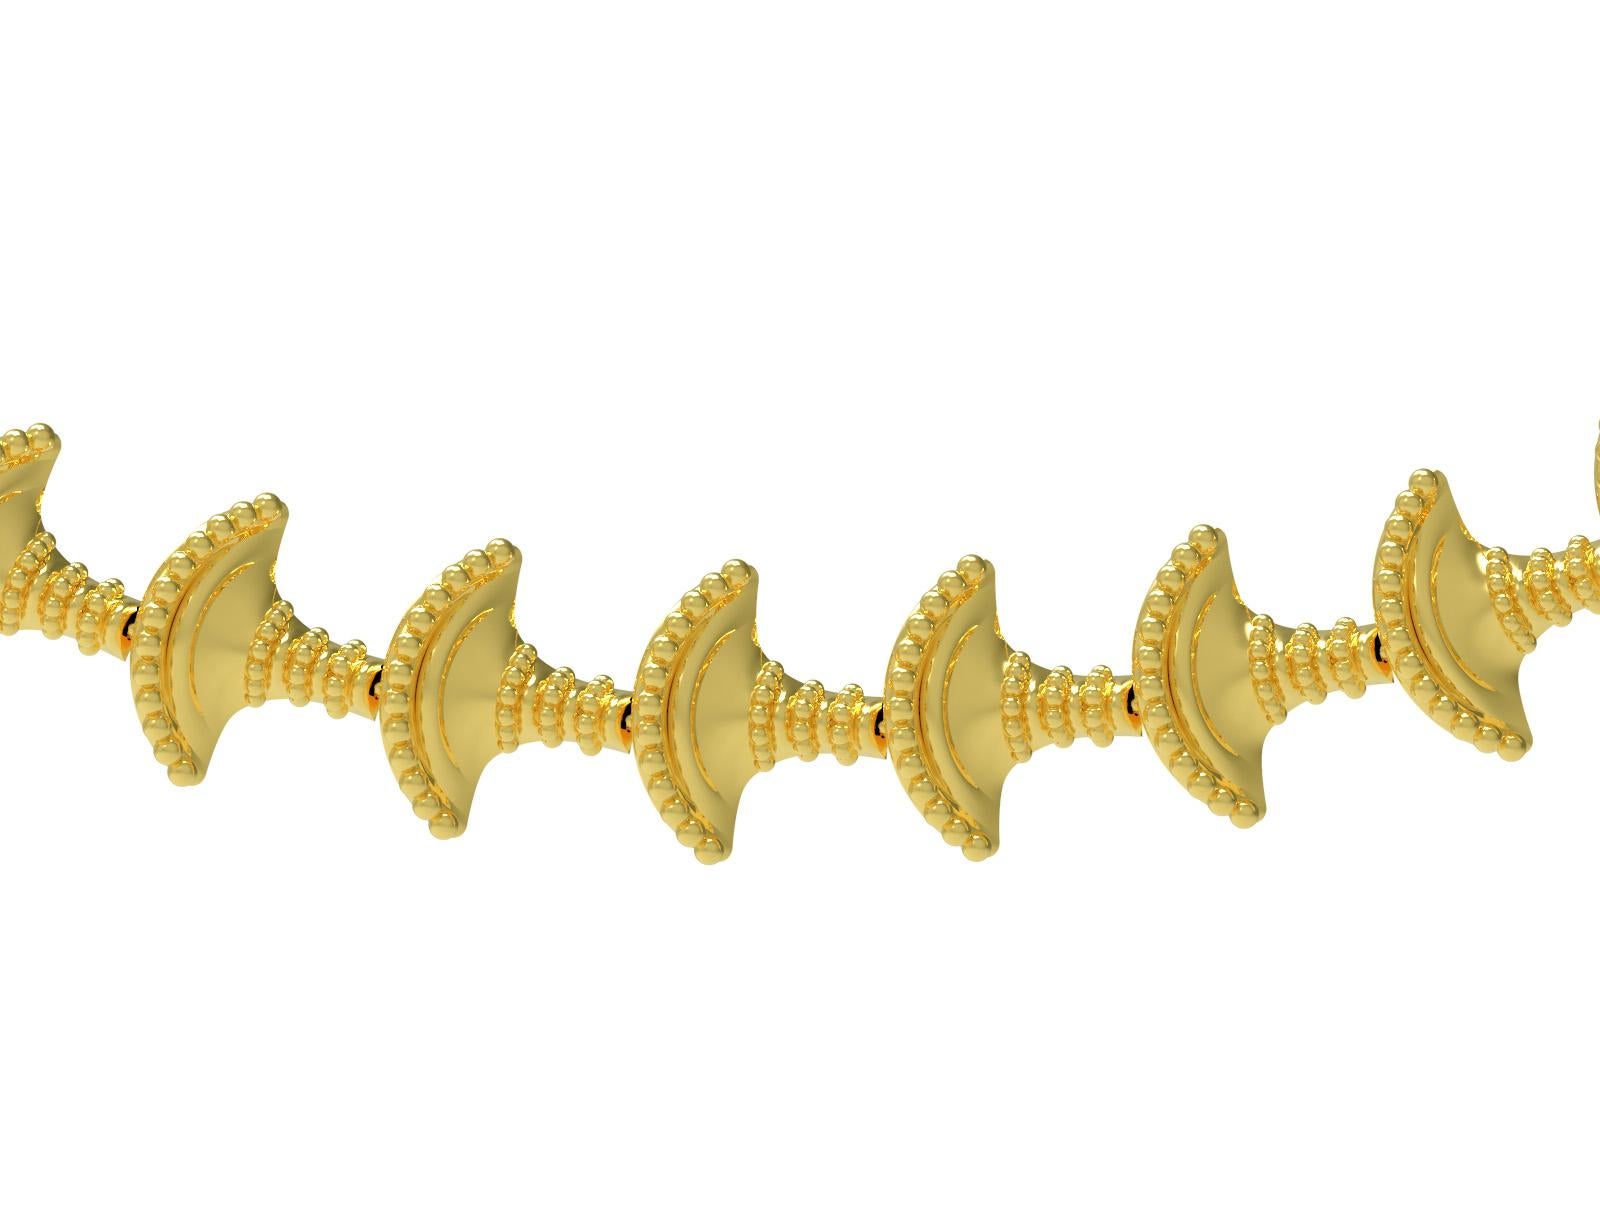 Collier en or jaune 18 carats inspiré des paniers minoens par Romae Jewelry. Ce superbe collier s'inspire d'une pièce d'or minoenne provenant de la région de Knossos, en Crète, datant d'environ 1450 av. Il est composé de petits maillons en forme de